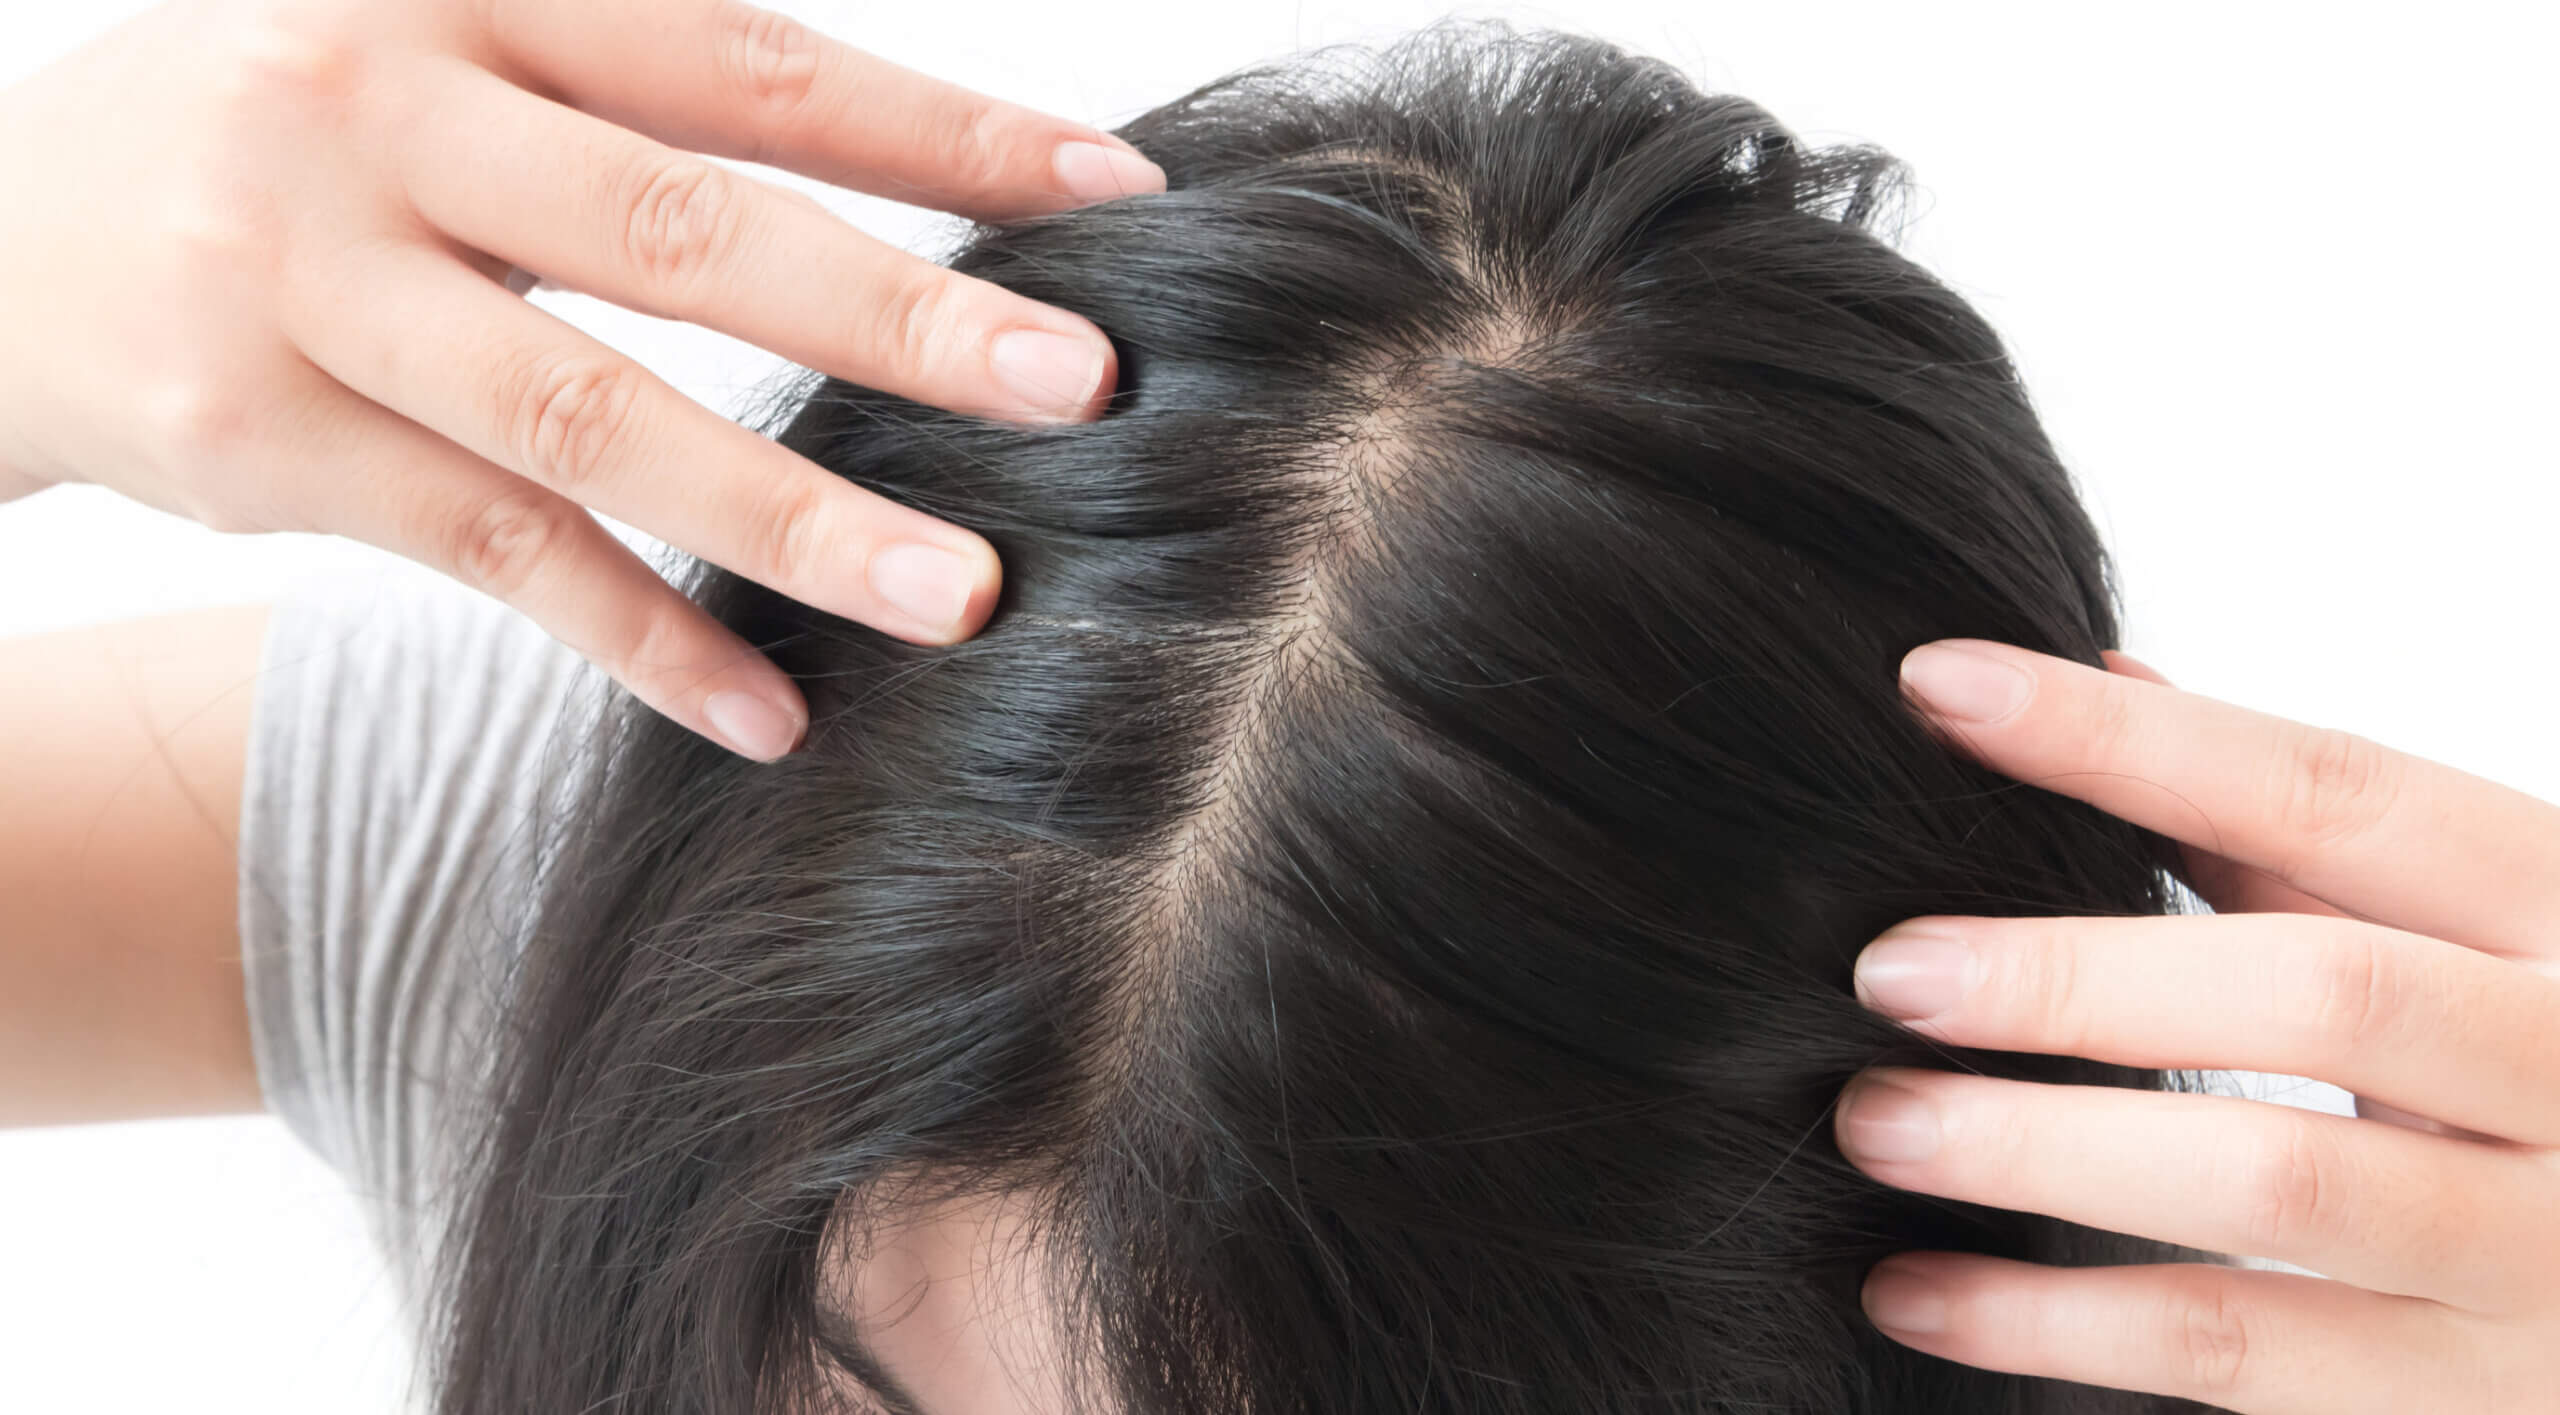 Masaje del cuero cabelludo para mejor efecto del ácido hialurónico.